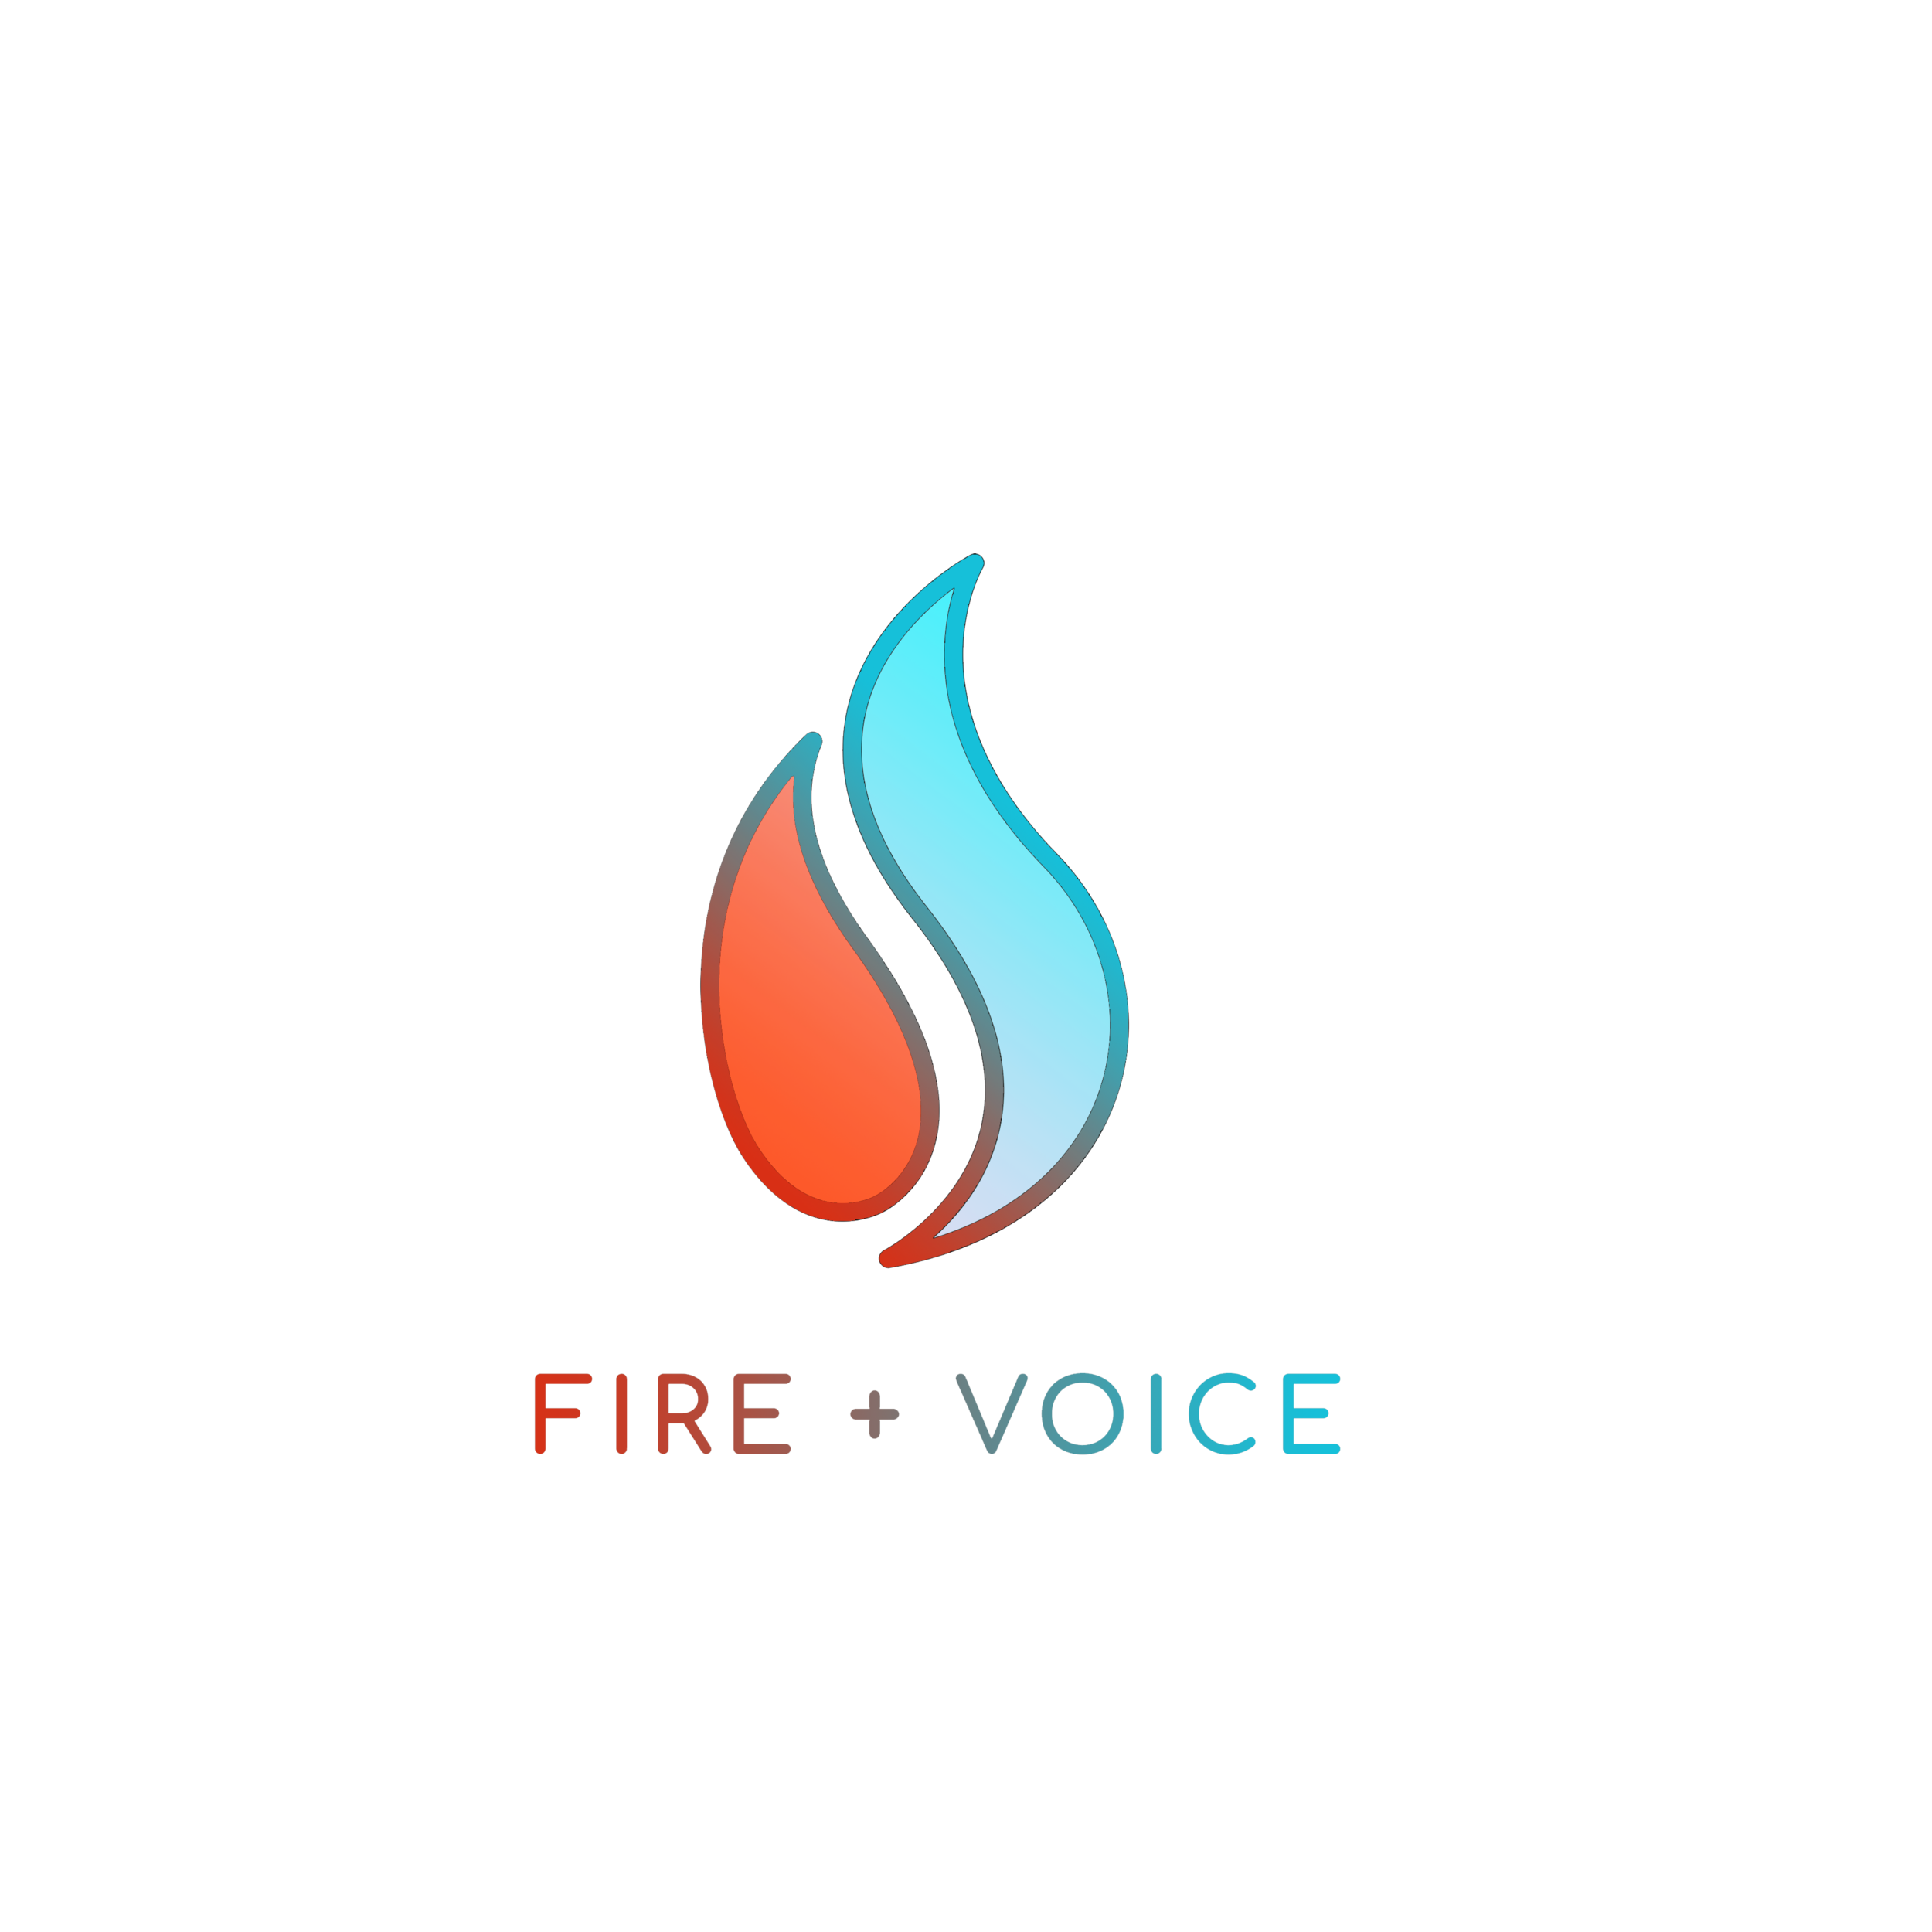 Fire + Voice